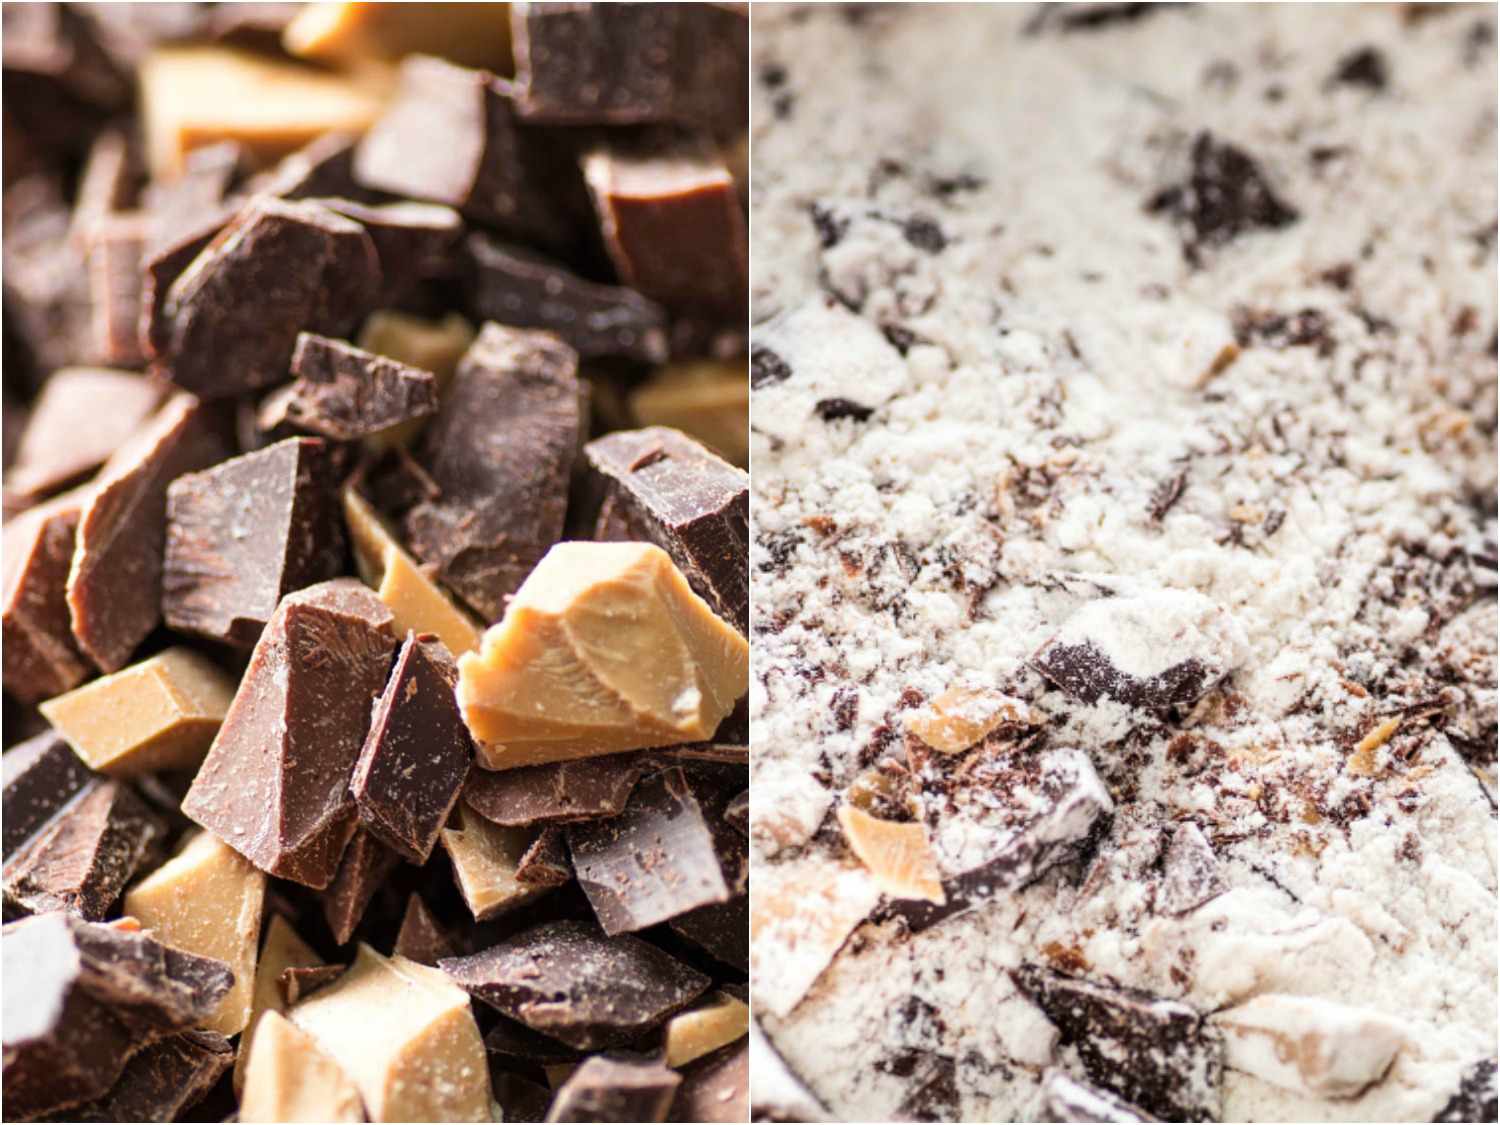 切碎的巧克力块和巧克力块涂在面粉上的巧克力片饼干的拼贴照片gydF4y2Ba